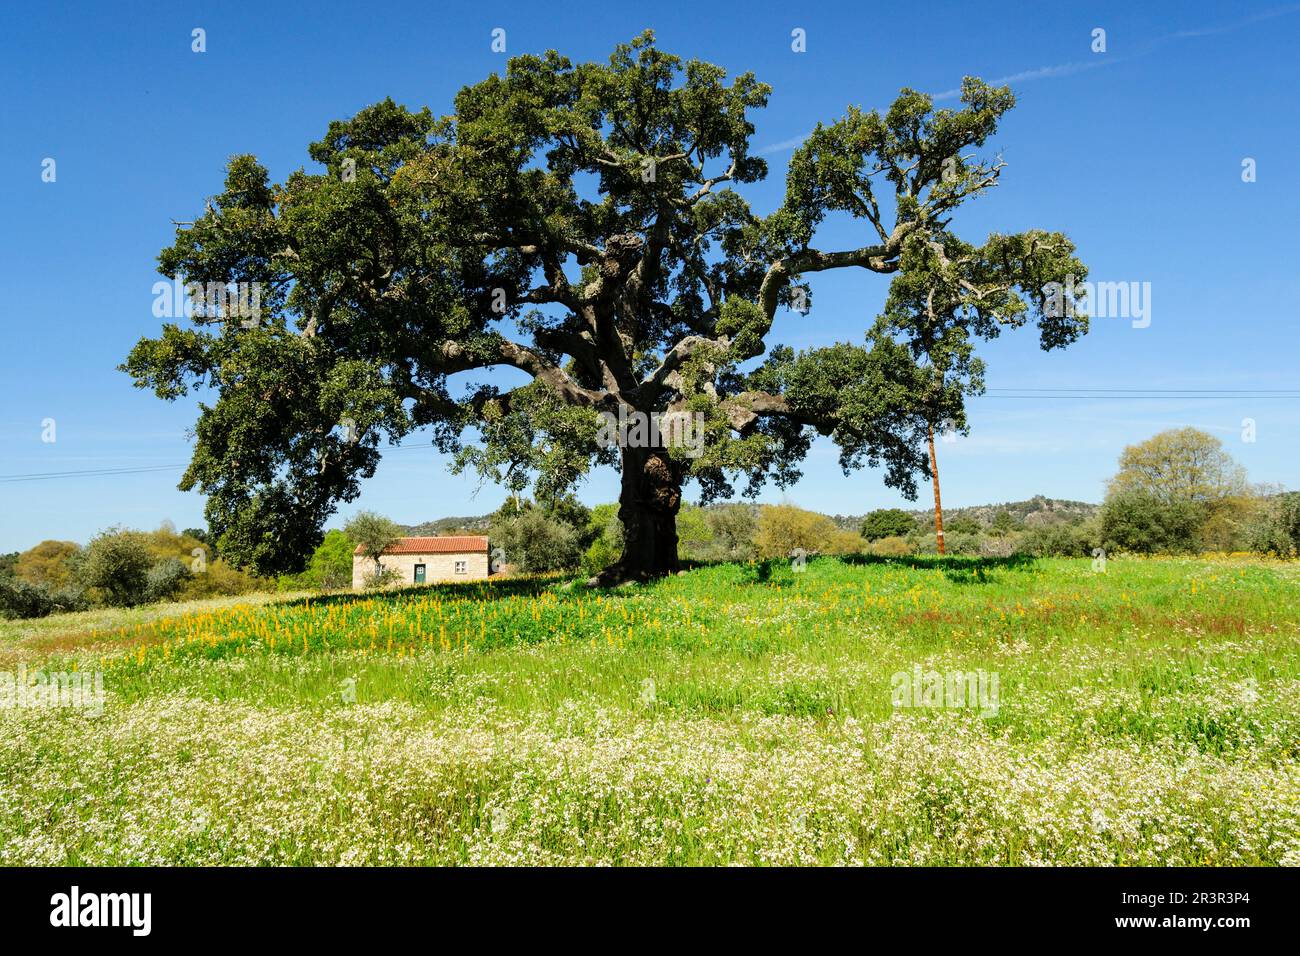 casa bajo un alcornoque, Quercus suber (Alcornoque mediterráneo), aldea de Joao Pires, Beira Alta, Portugal, europa. Stock Photo